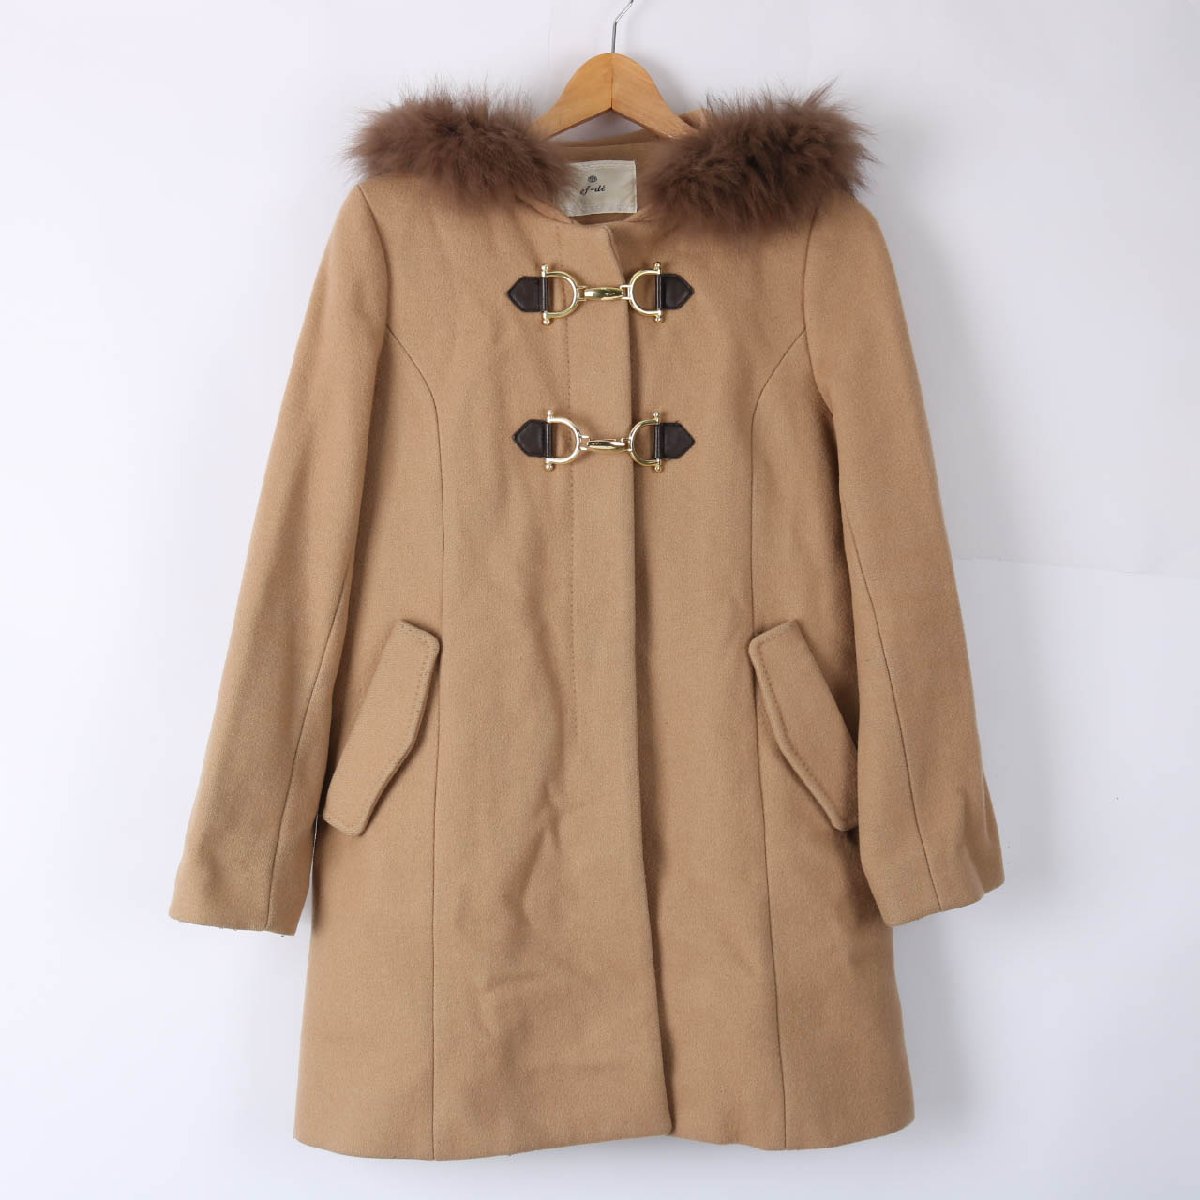  ef-de длинное пальто с капюшоном . мех одноцветный внешний шерсть . женский 9 размер Brown ef-de